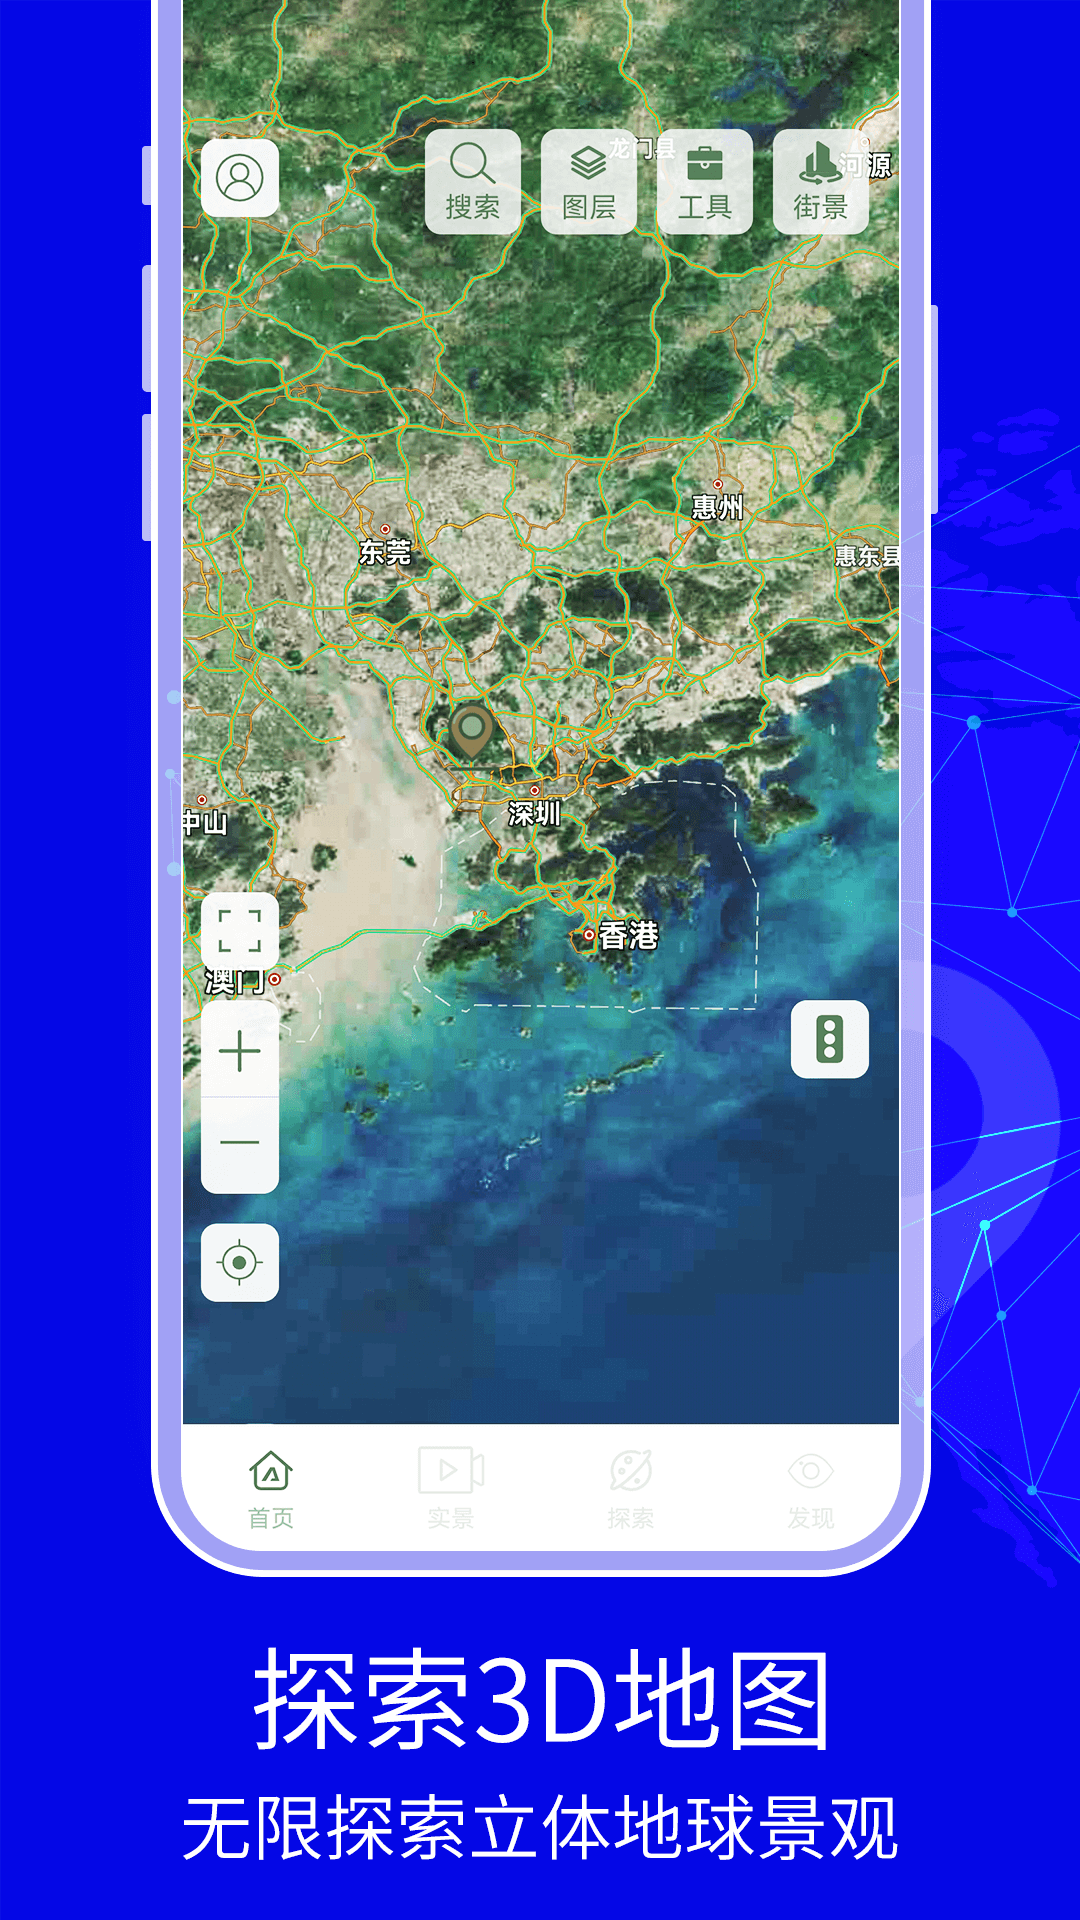 3D天眼卫星实景地图app下载免费高清版